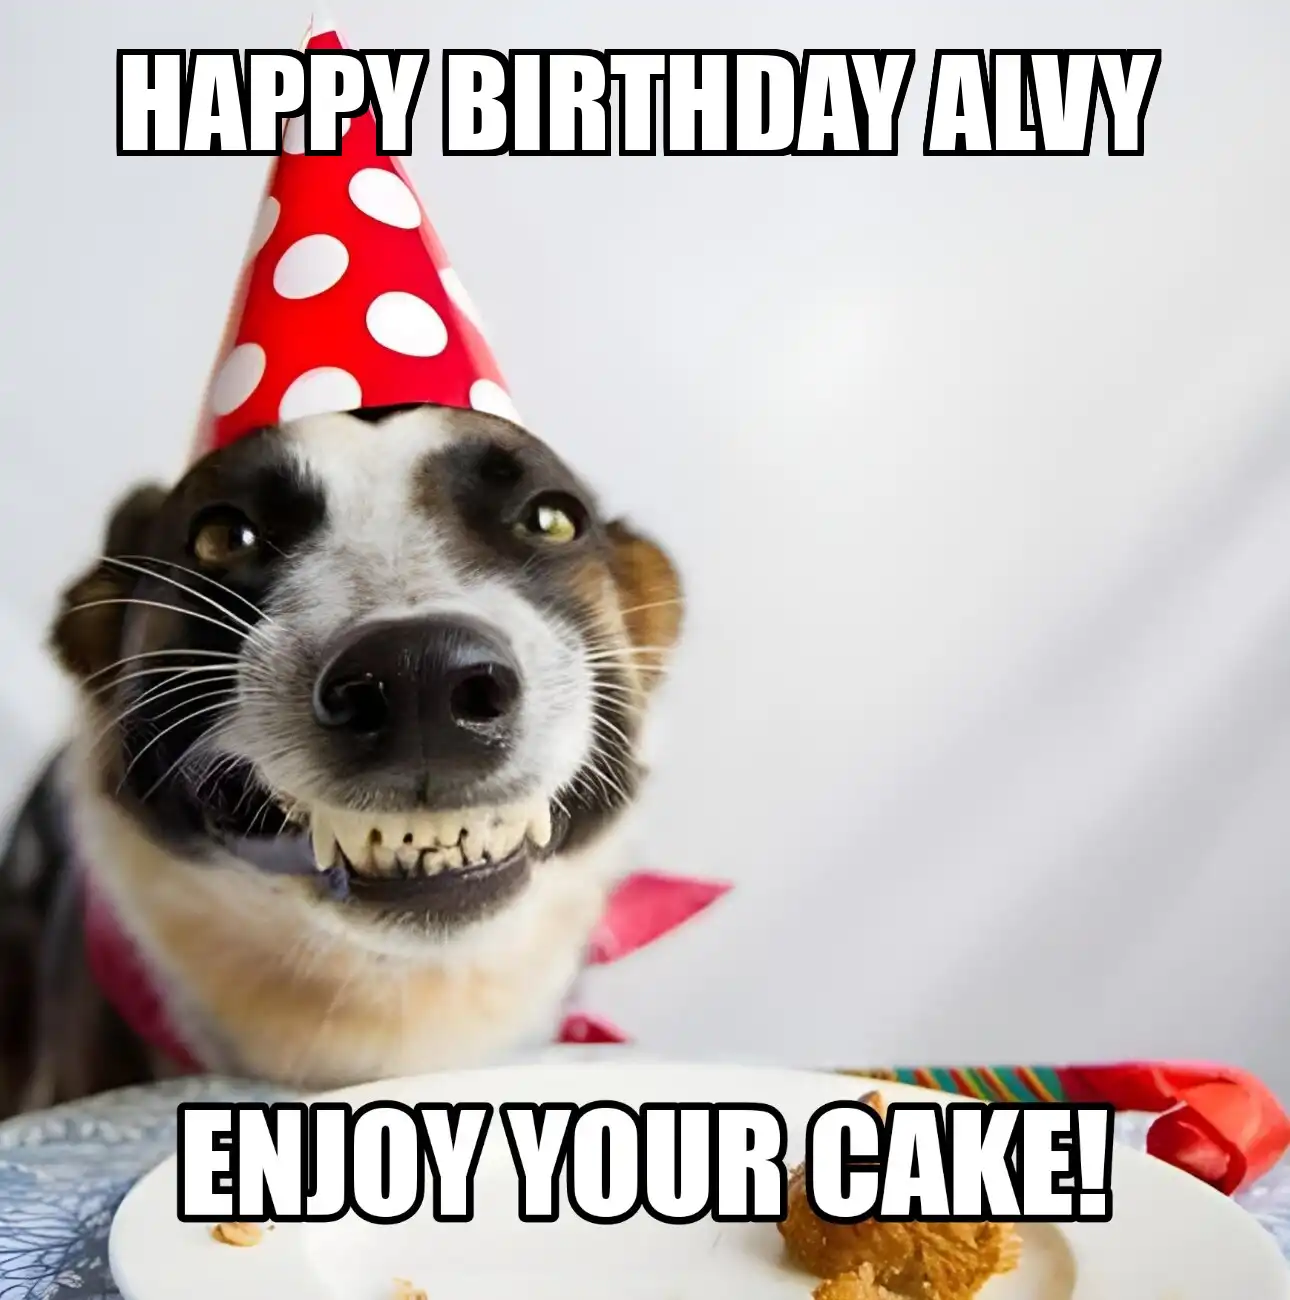 Happy Birthday Alvy Enjoy Your Cake Dog Meme